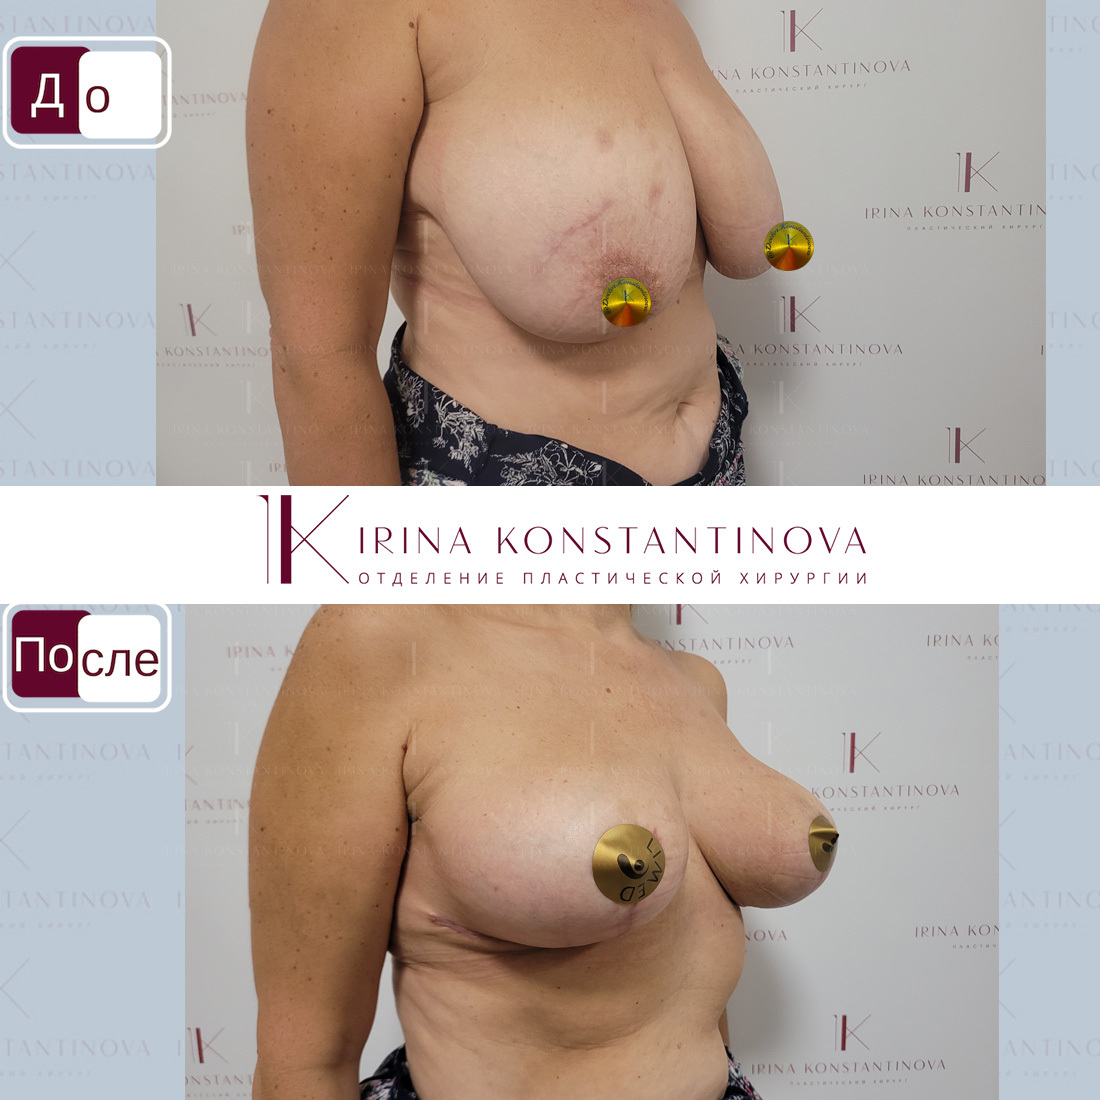 упражнения на уменьшение груди у женщин фото 47